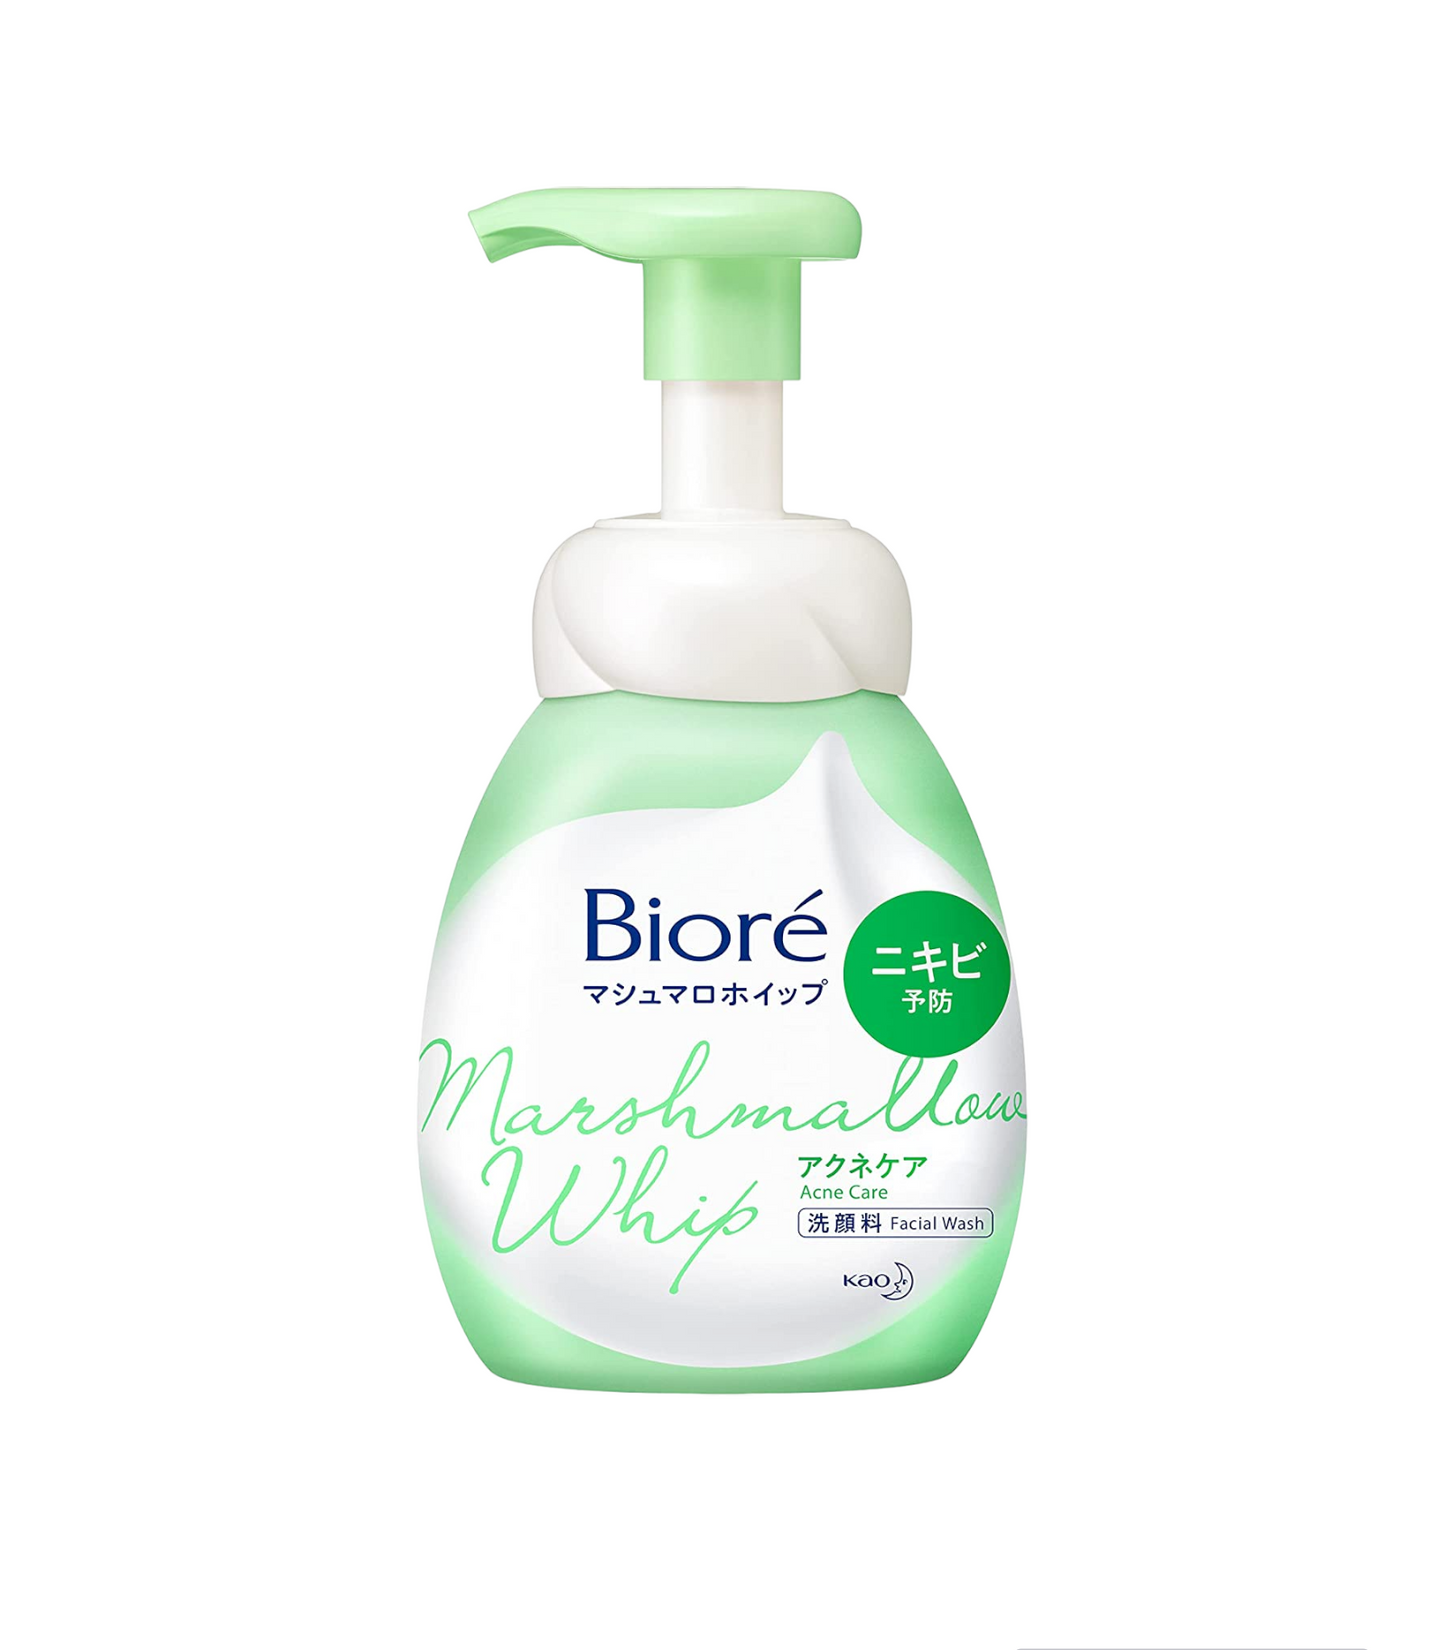 Nettoyant visage moussant - Biore Marshmallow Whip - 150ml : Pour lutter contre l'acné